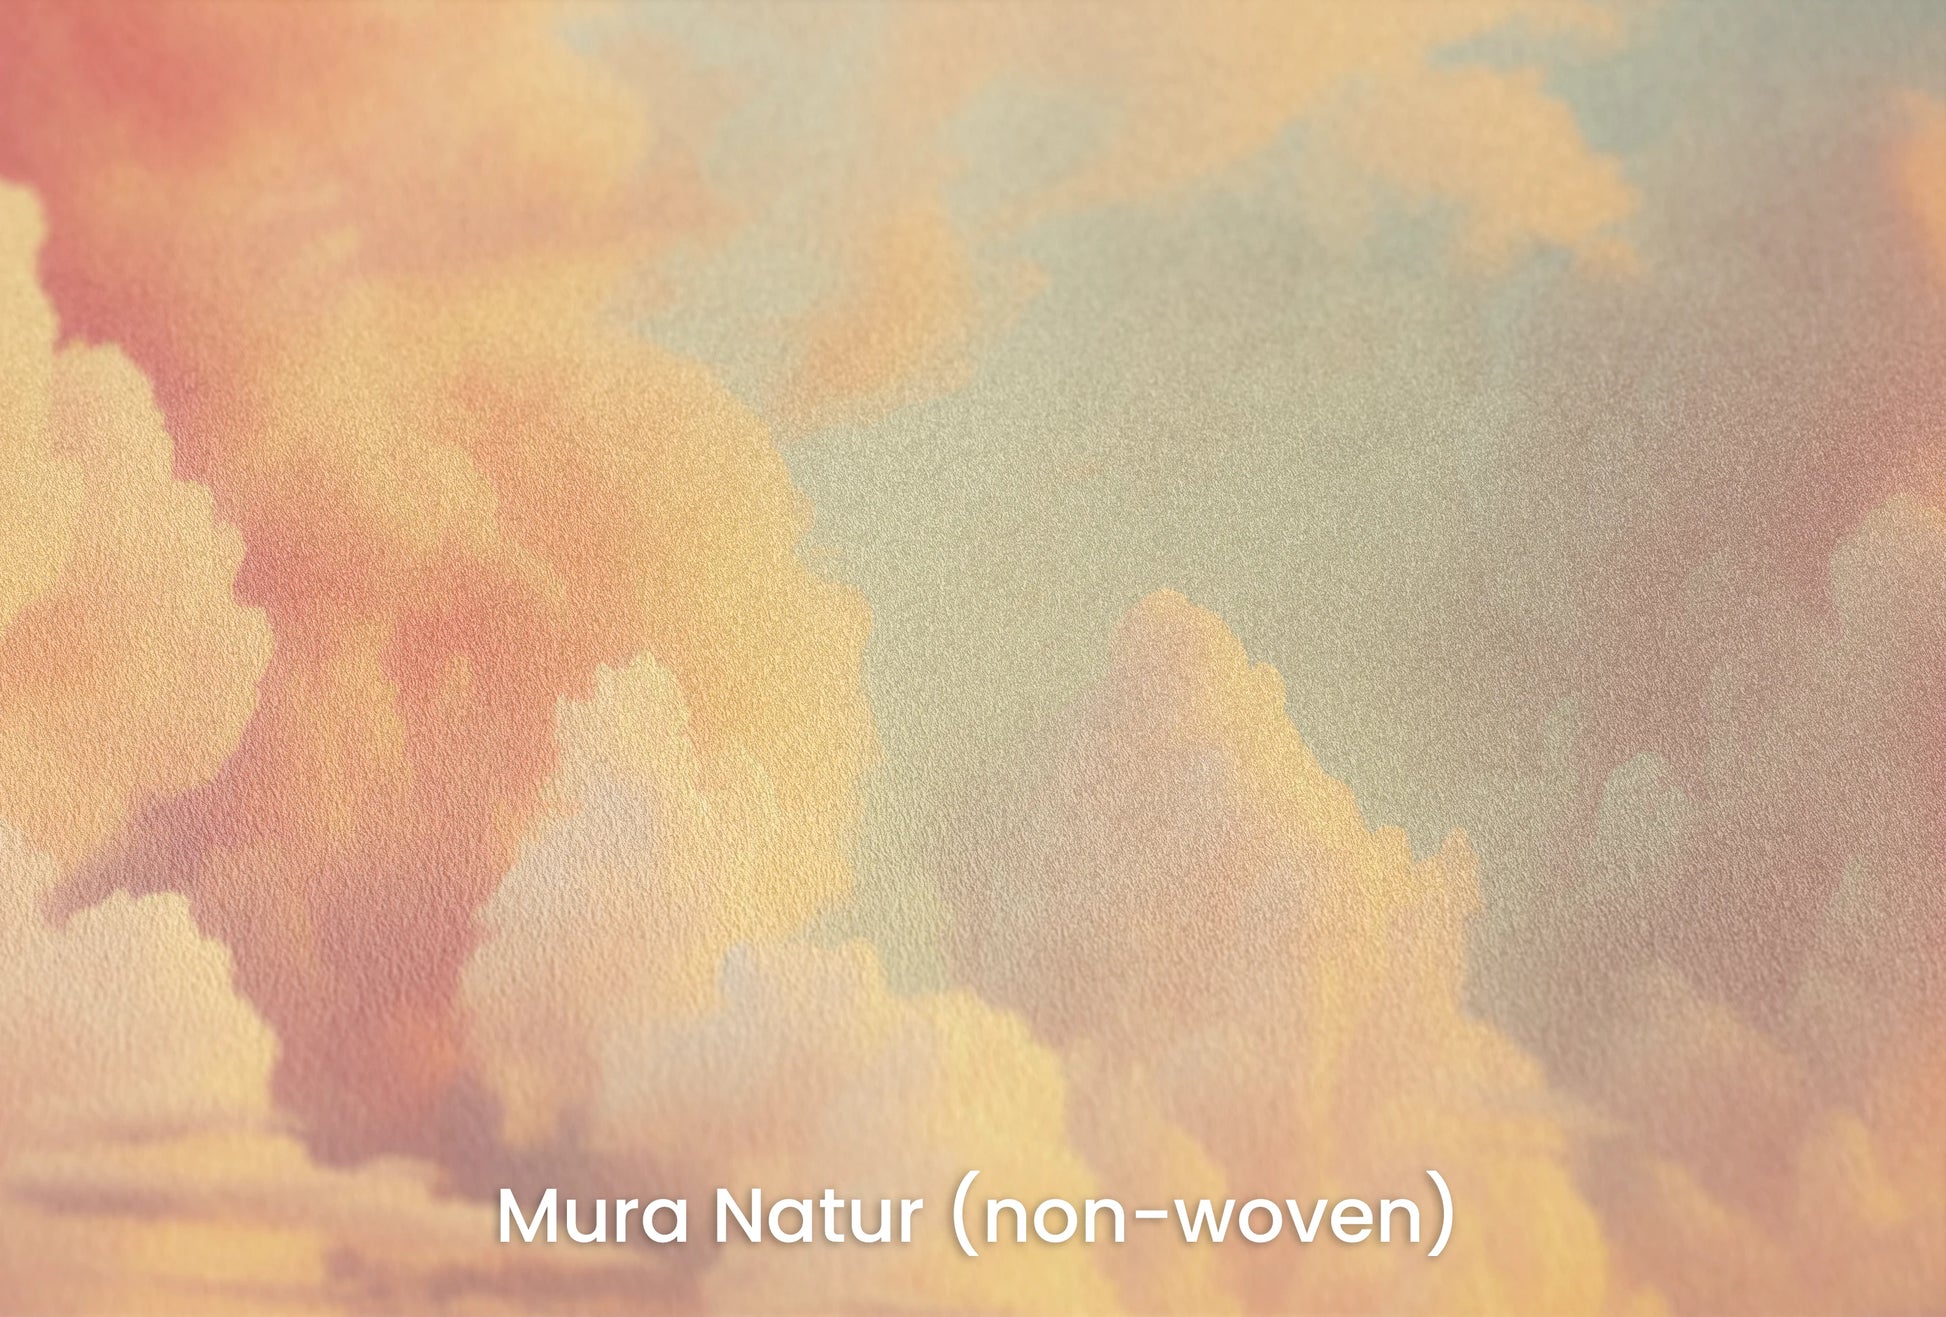 Zbliżenie na artystyczną fototapetę o nazwie Cotton Clouds na podłożu Mura Natur (non-woven) - naturalne i ekologiczne podłoże.